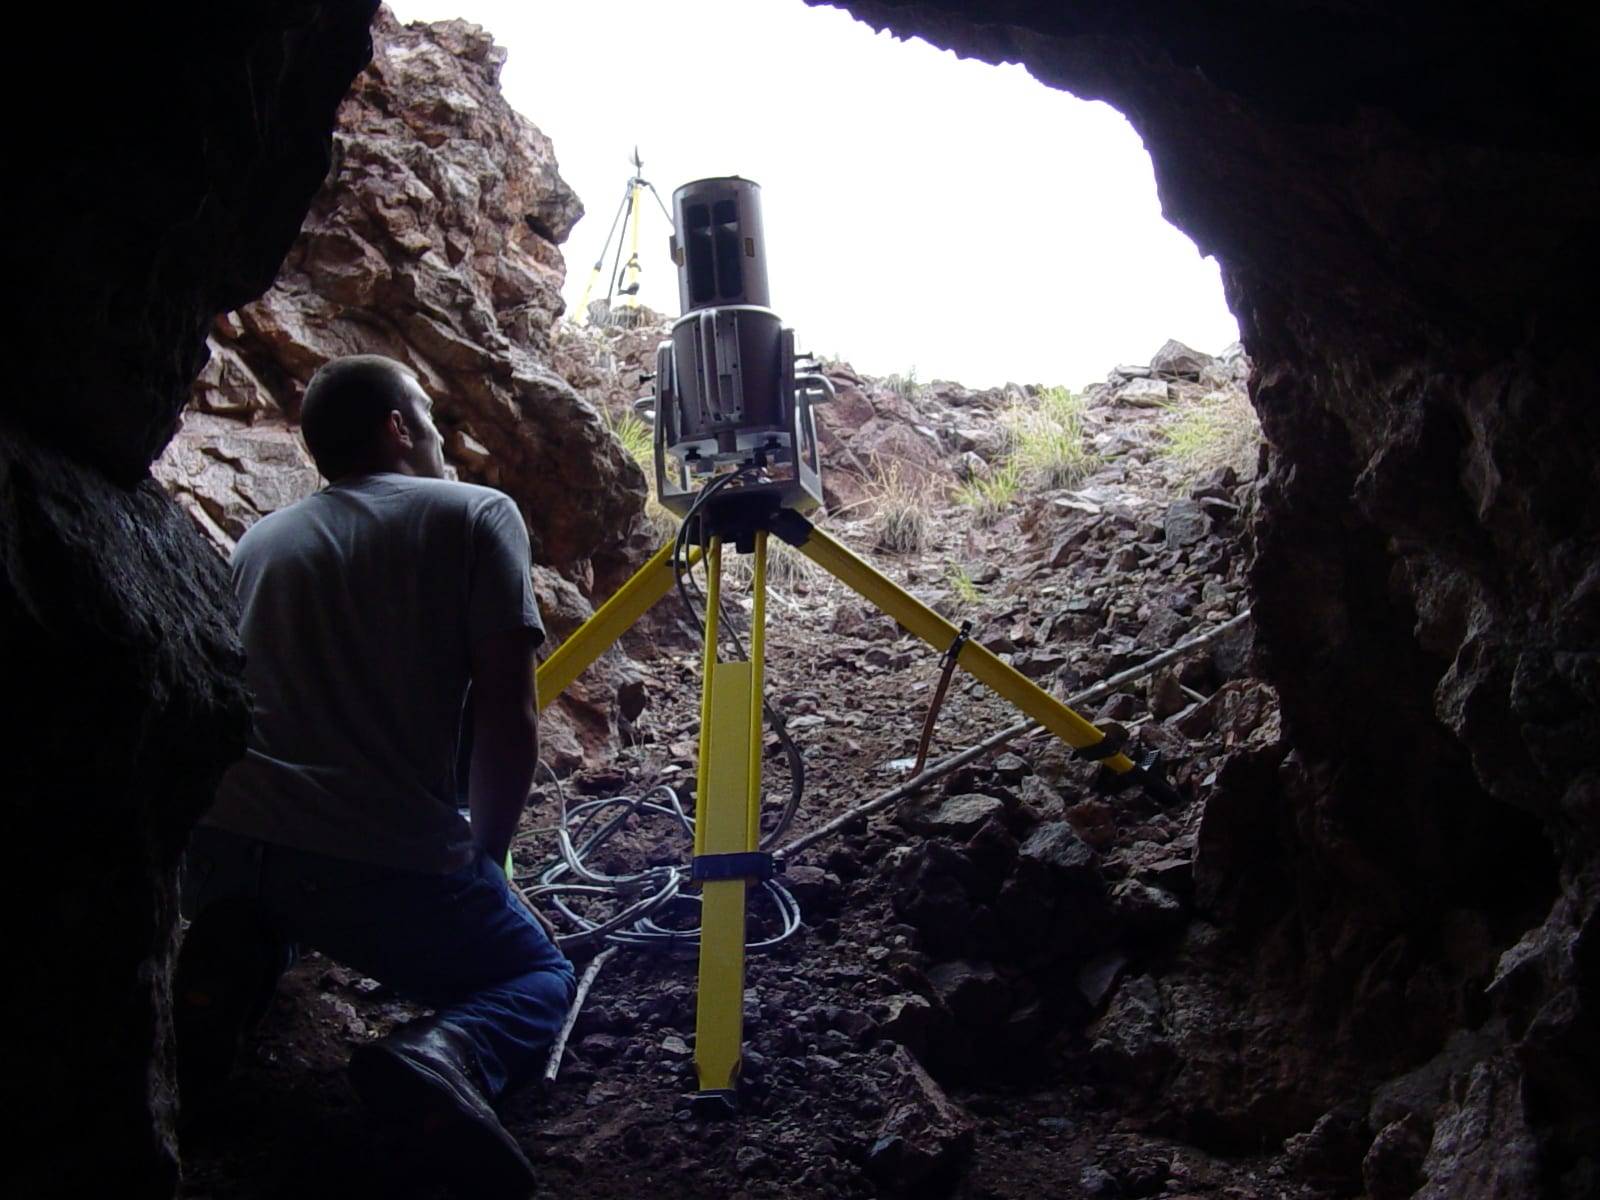 scanner inside cave